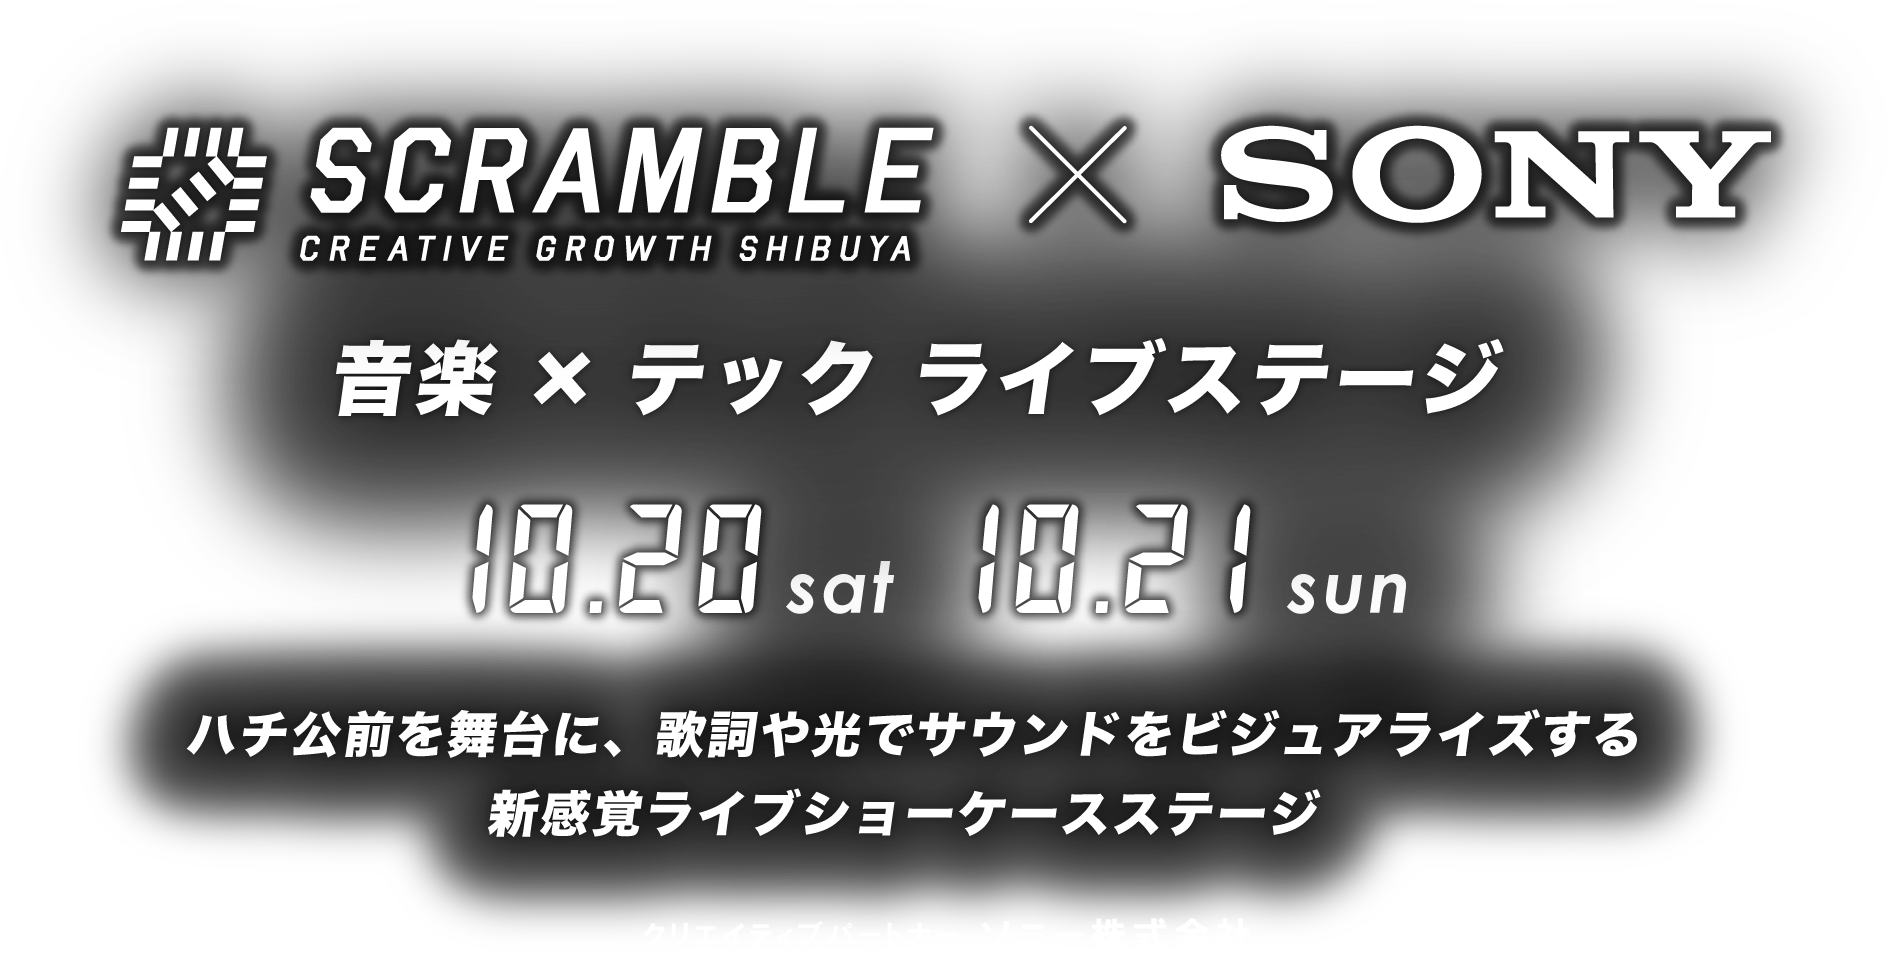 SCRAMBLE CREATIVE GROWTH SHIBUYA x SONY 音楽×テック ライブステージ